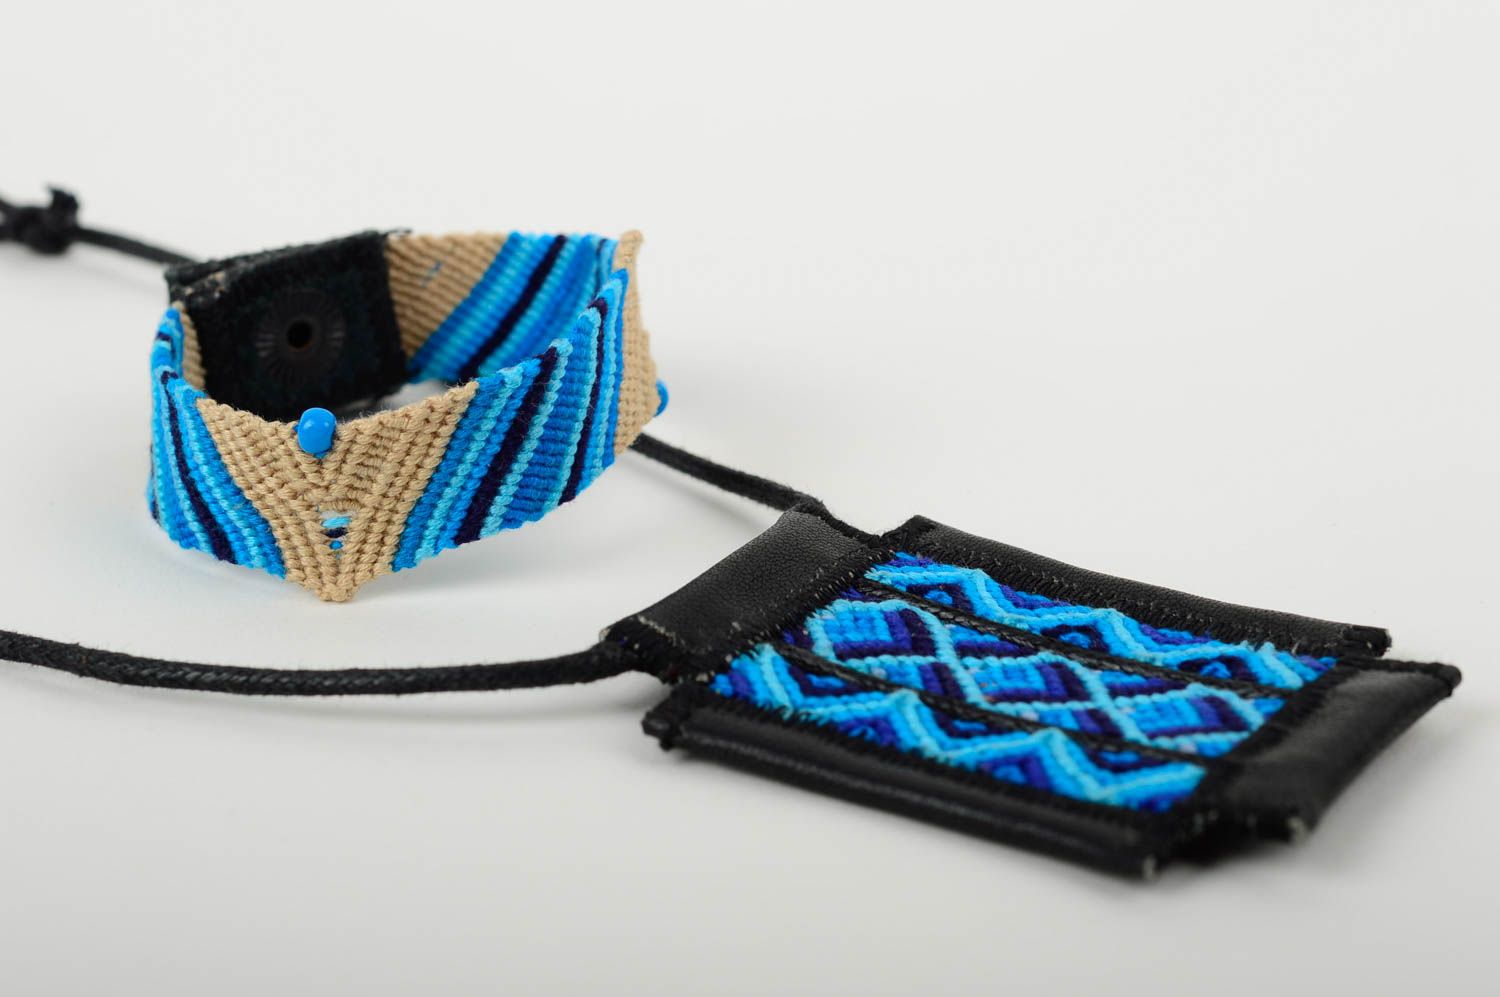 Macrame bijouterie handmade woven pendant friendship bracelet for women photo 3